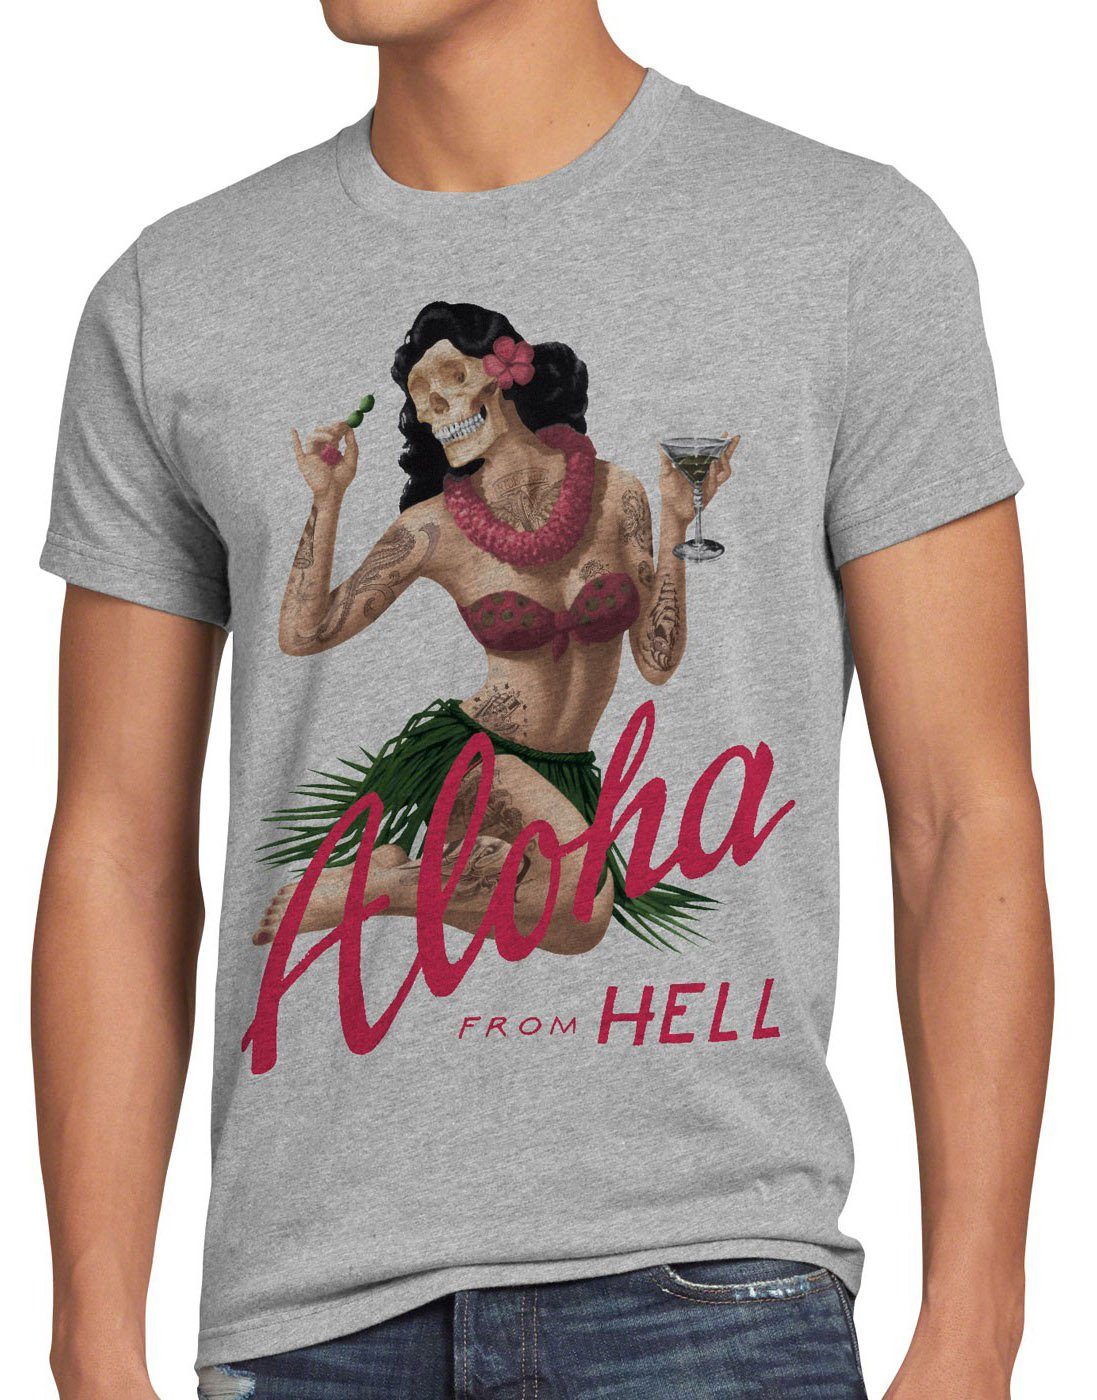 Hell T-Shirt usa style3 Aloha punk surfer Print-Shirt meliert from Herren tätowiert grau tiki tattoo rock hawaii